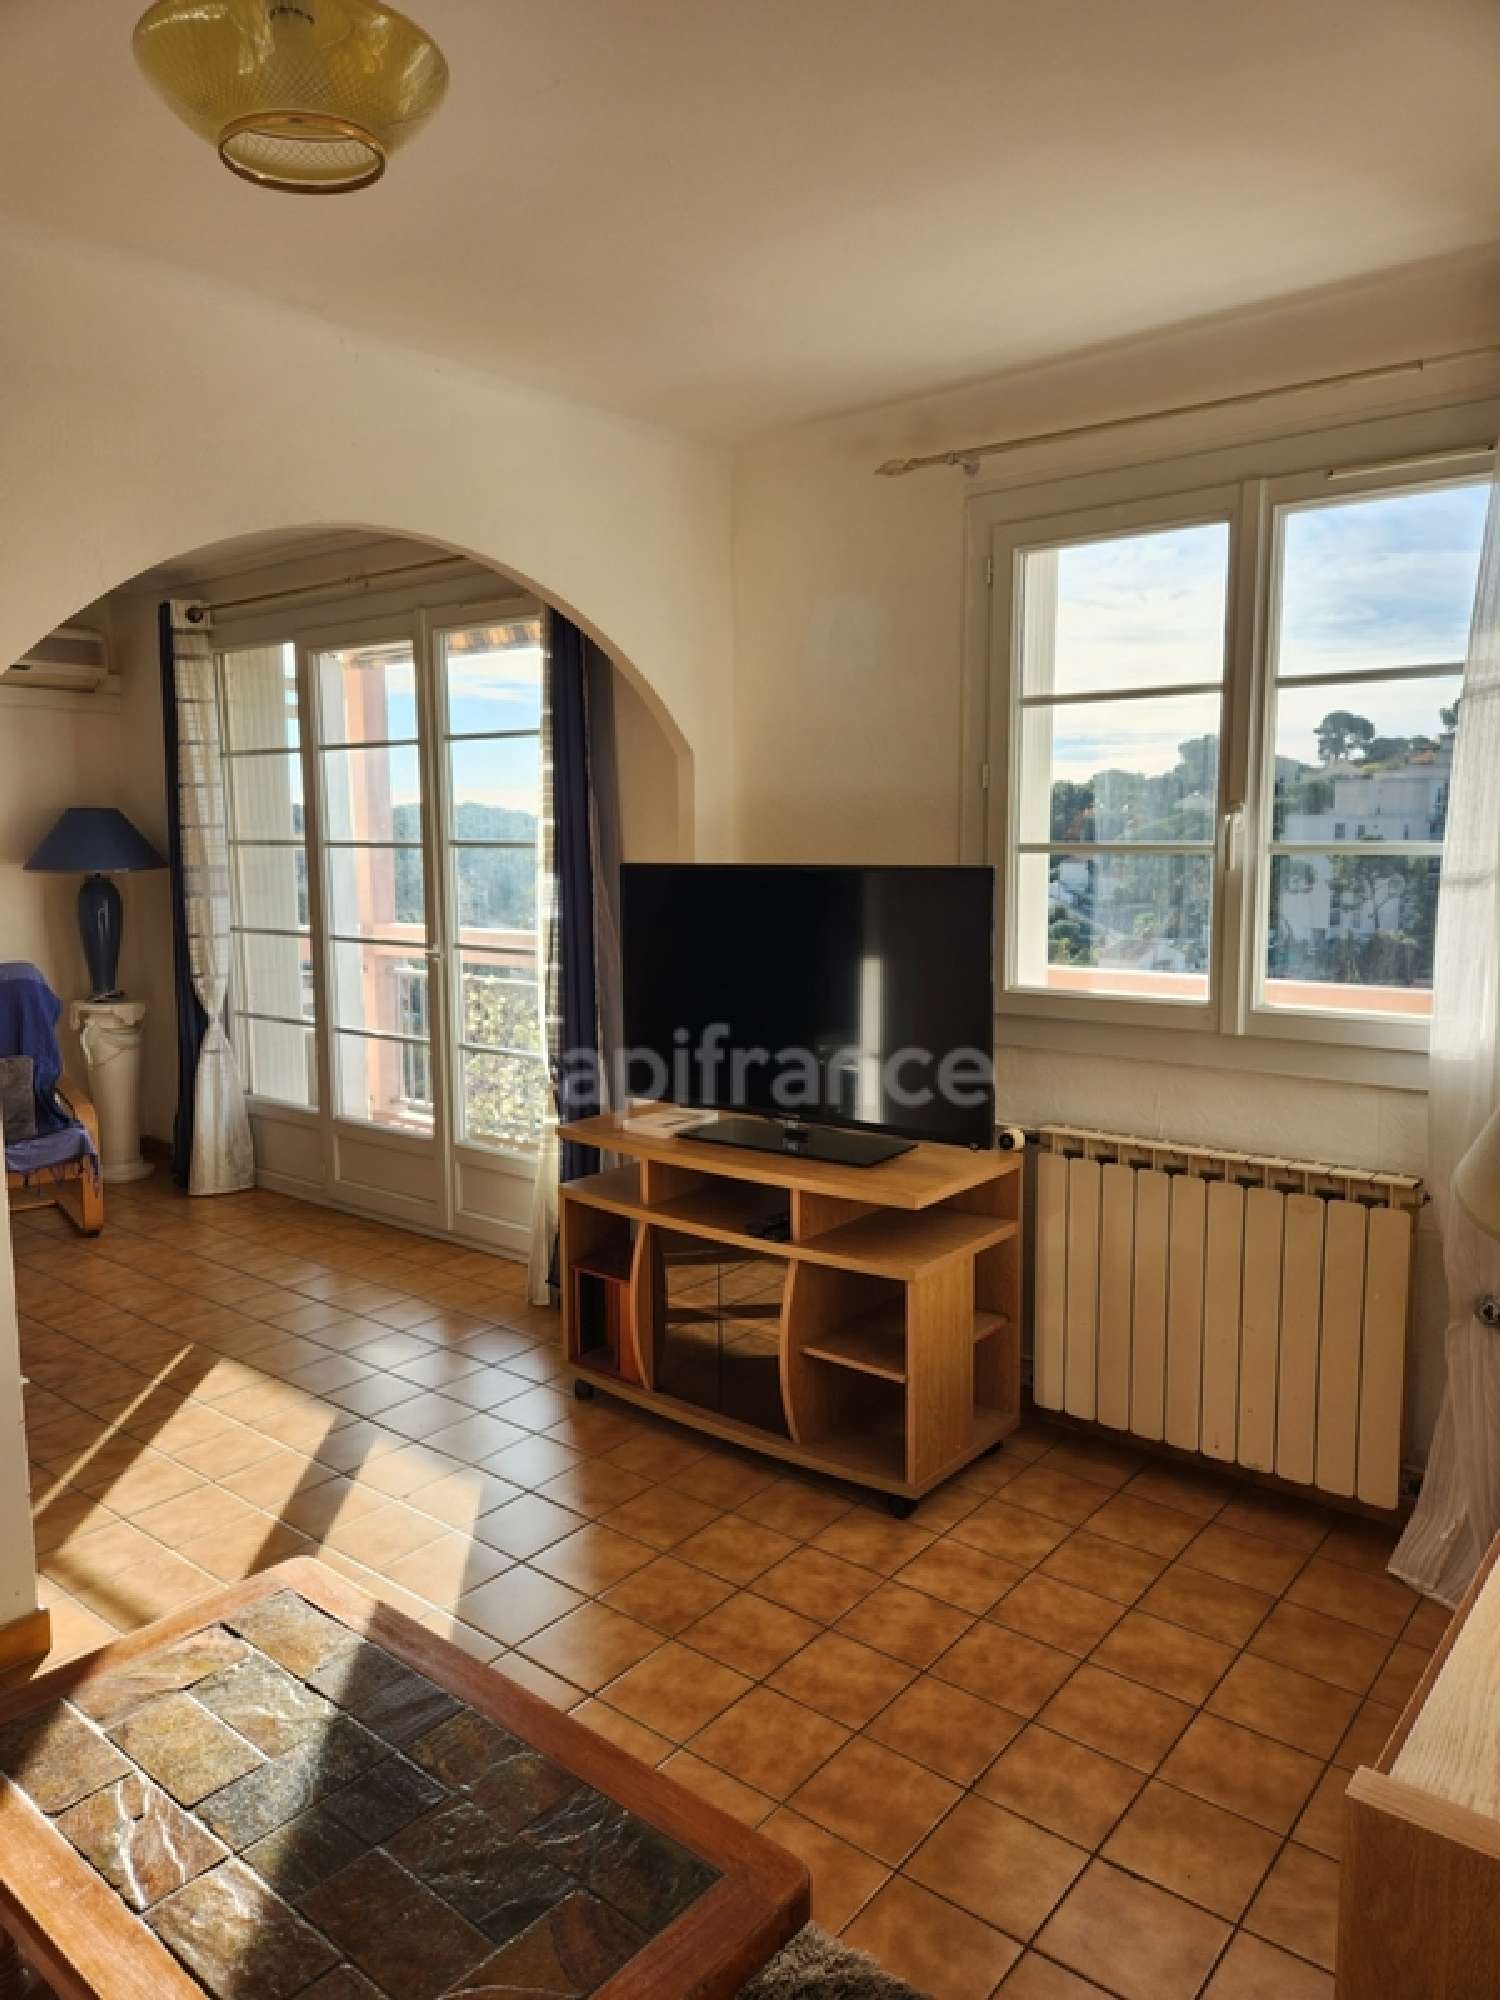  for sale apartment Toulon 83200 Var 4